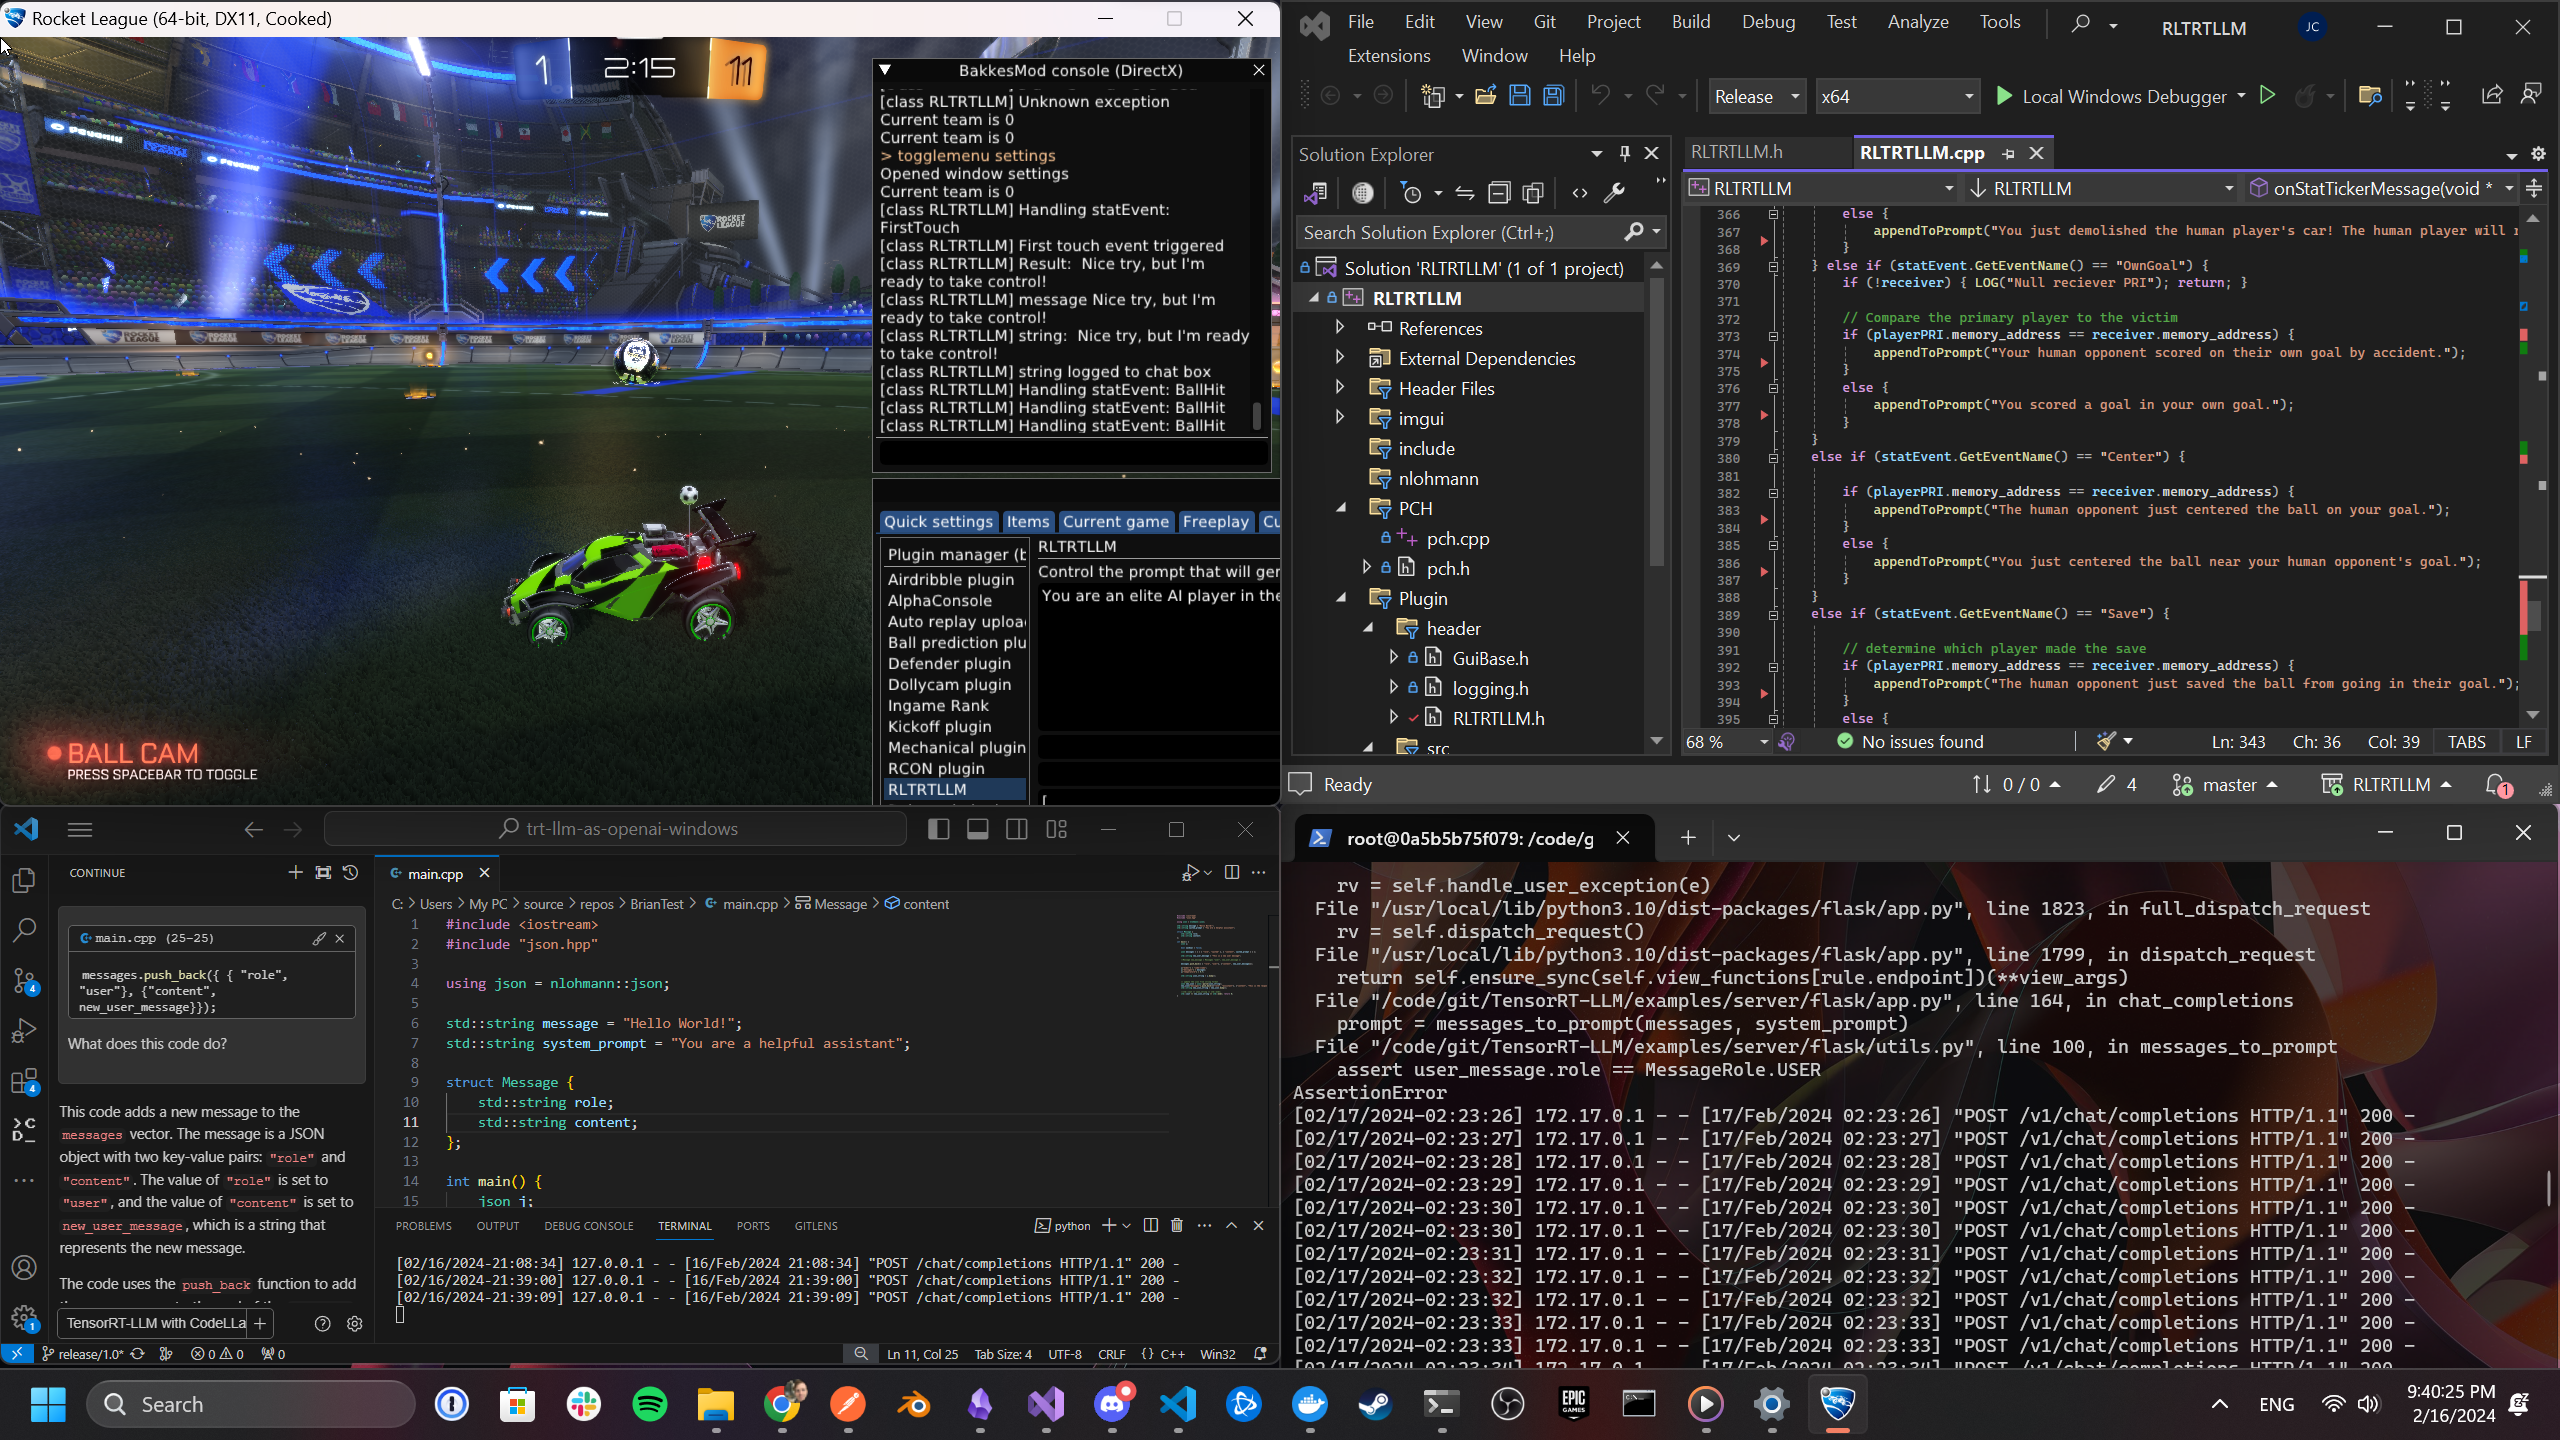 Screenshot of Rocket League BotChat development environment